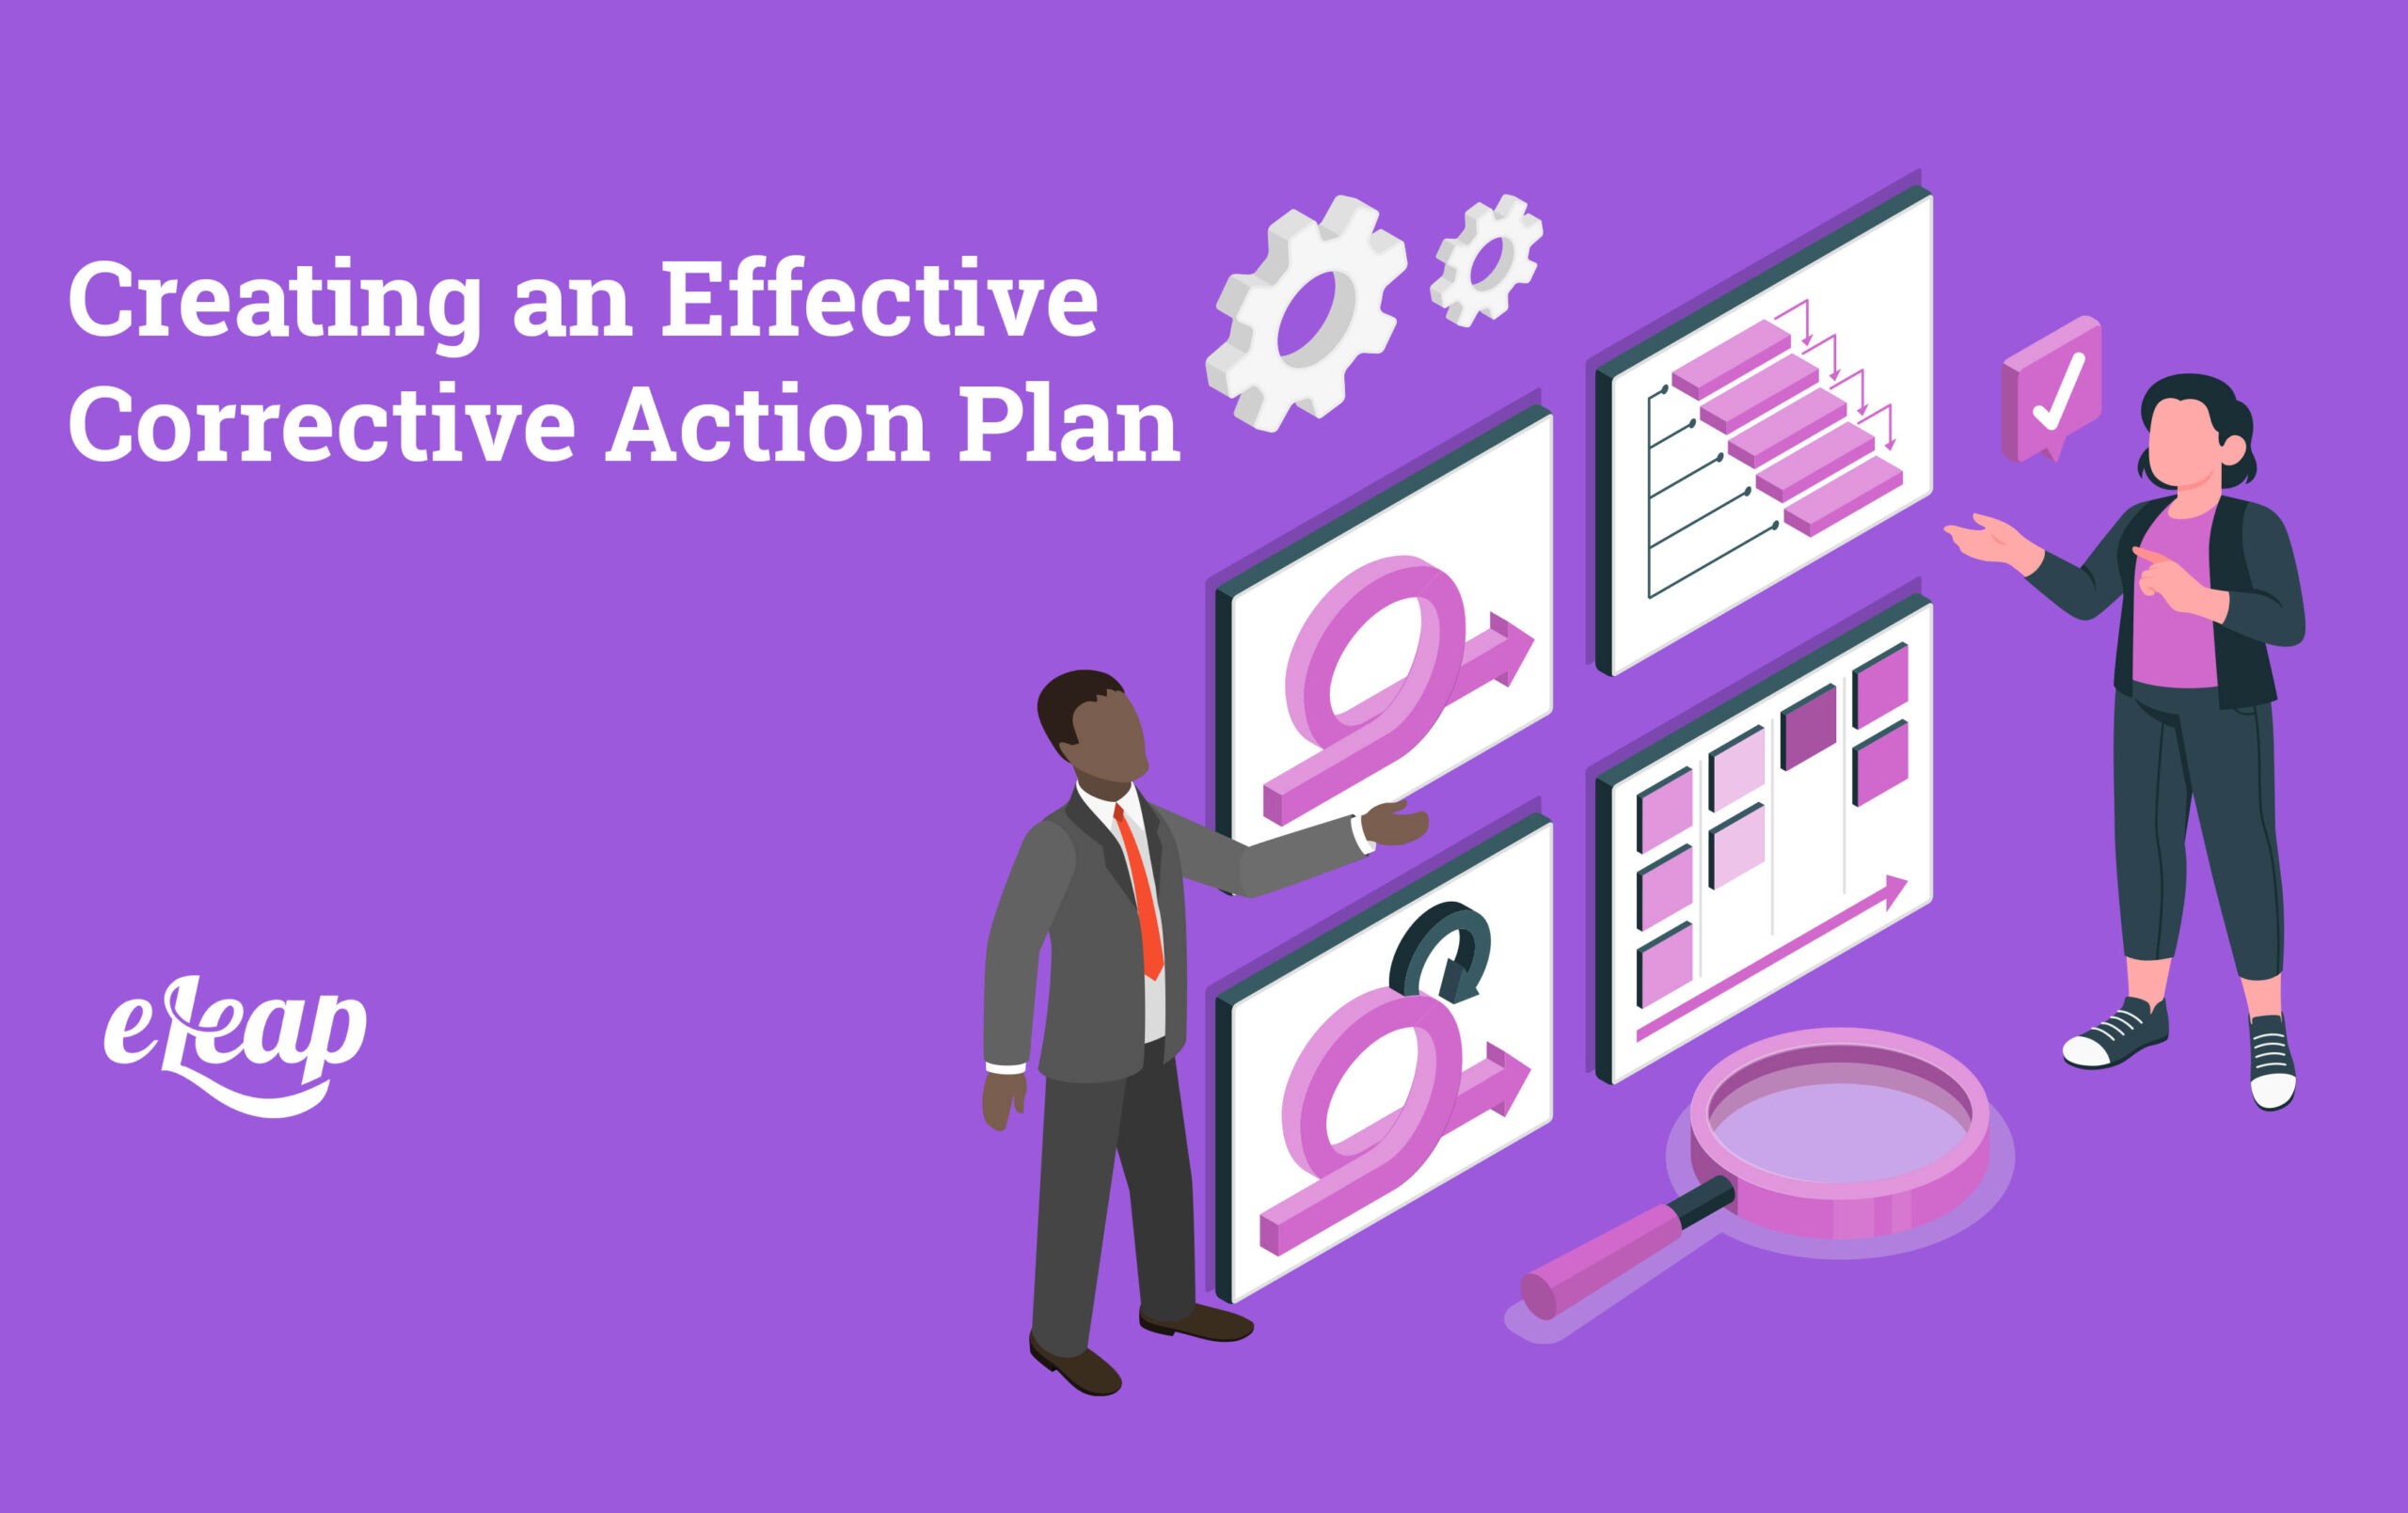 Corrective Action Plan